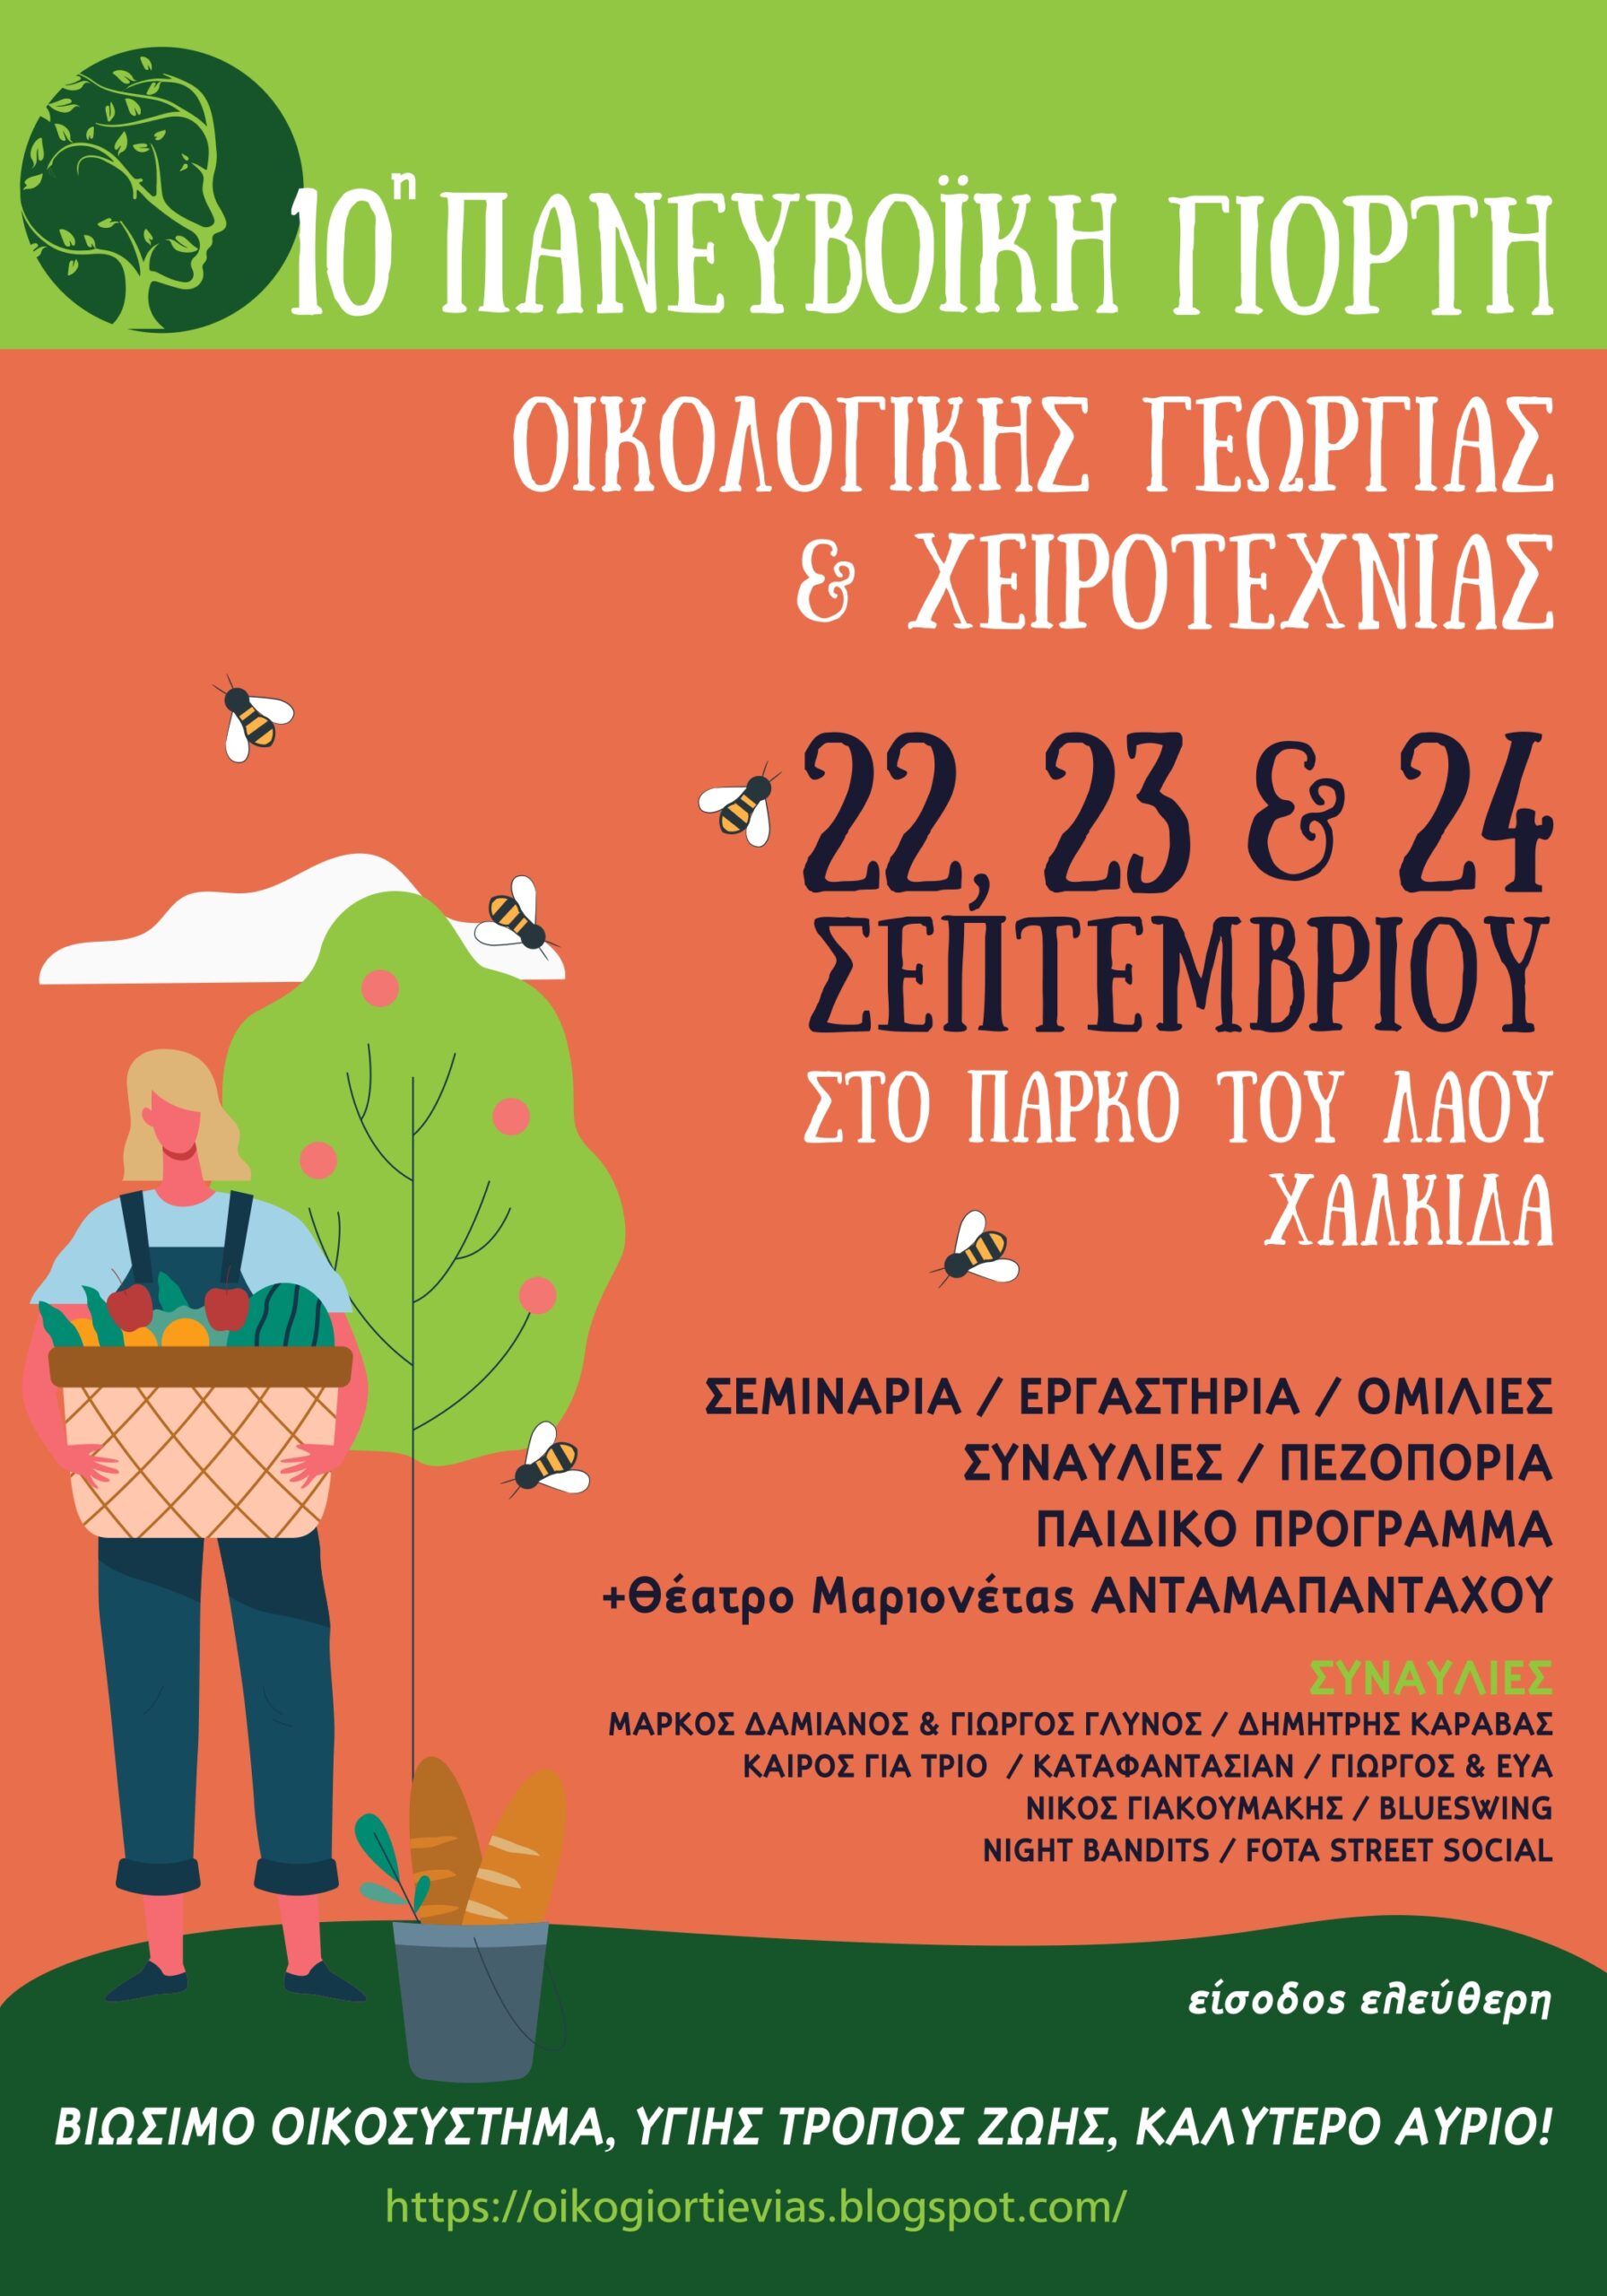 10η Πανευβοϊκή Γιορτή Οικολογικής Γεωργίας και Χειροτεχνίας | Με ελεύθερη είσοδο